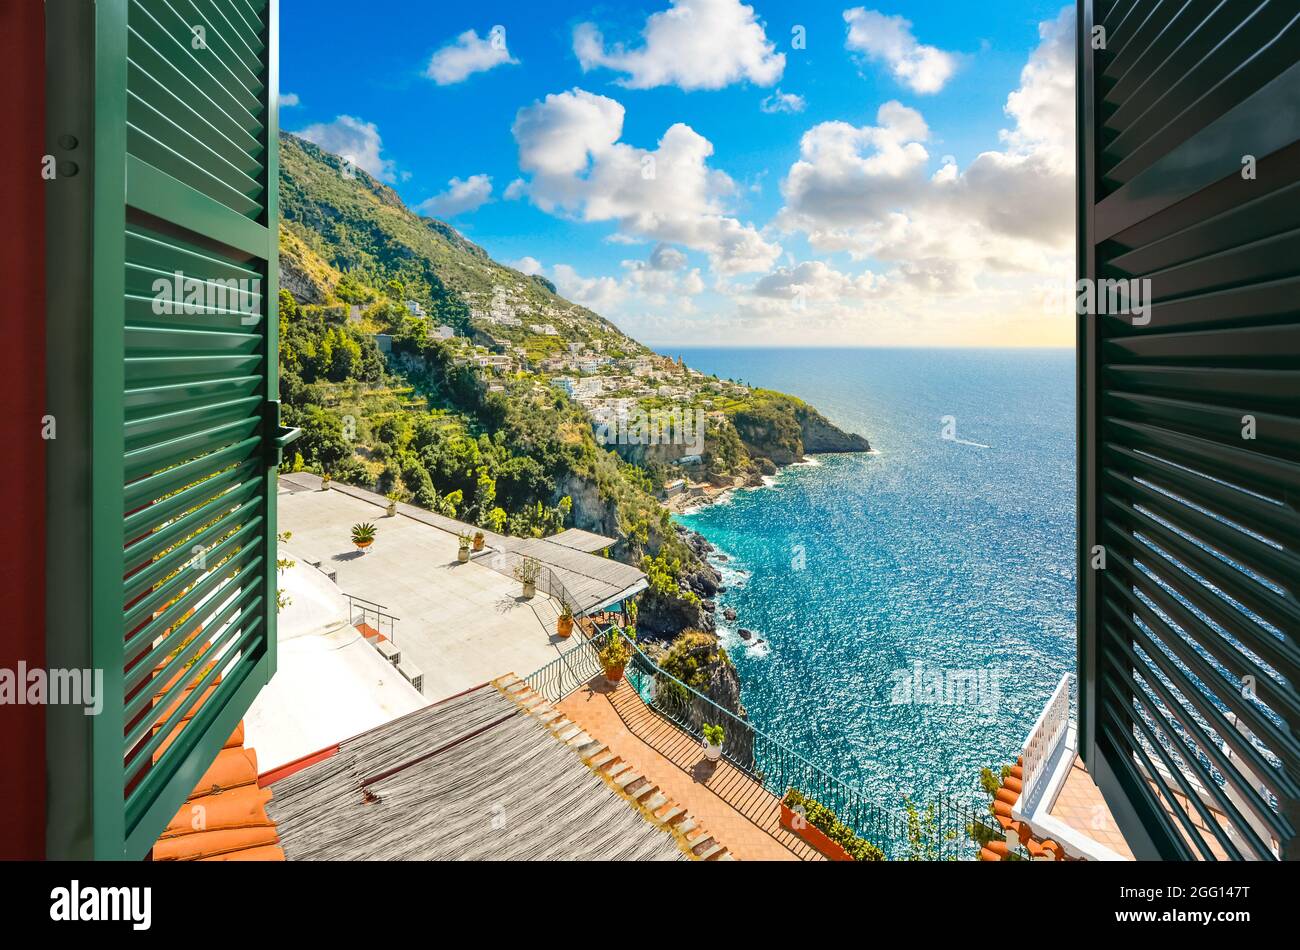 Blick durch ein offenes Fenster mit Fensterläden auf die am Meer gelegene Stadt Praiano, Italien, entlang der Amalfiküste. Stockfoto